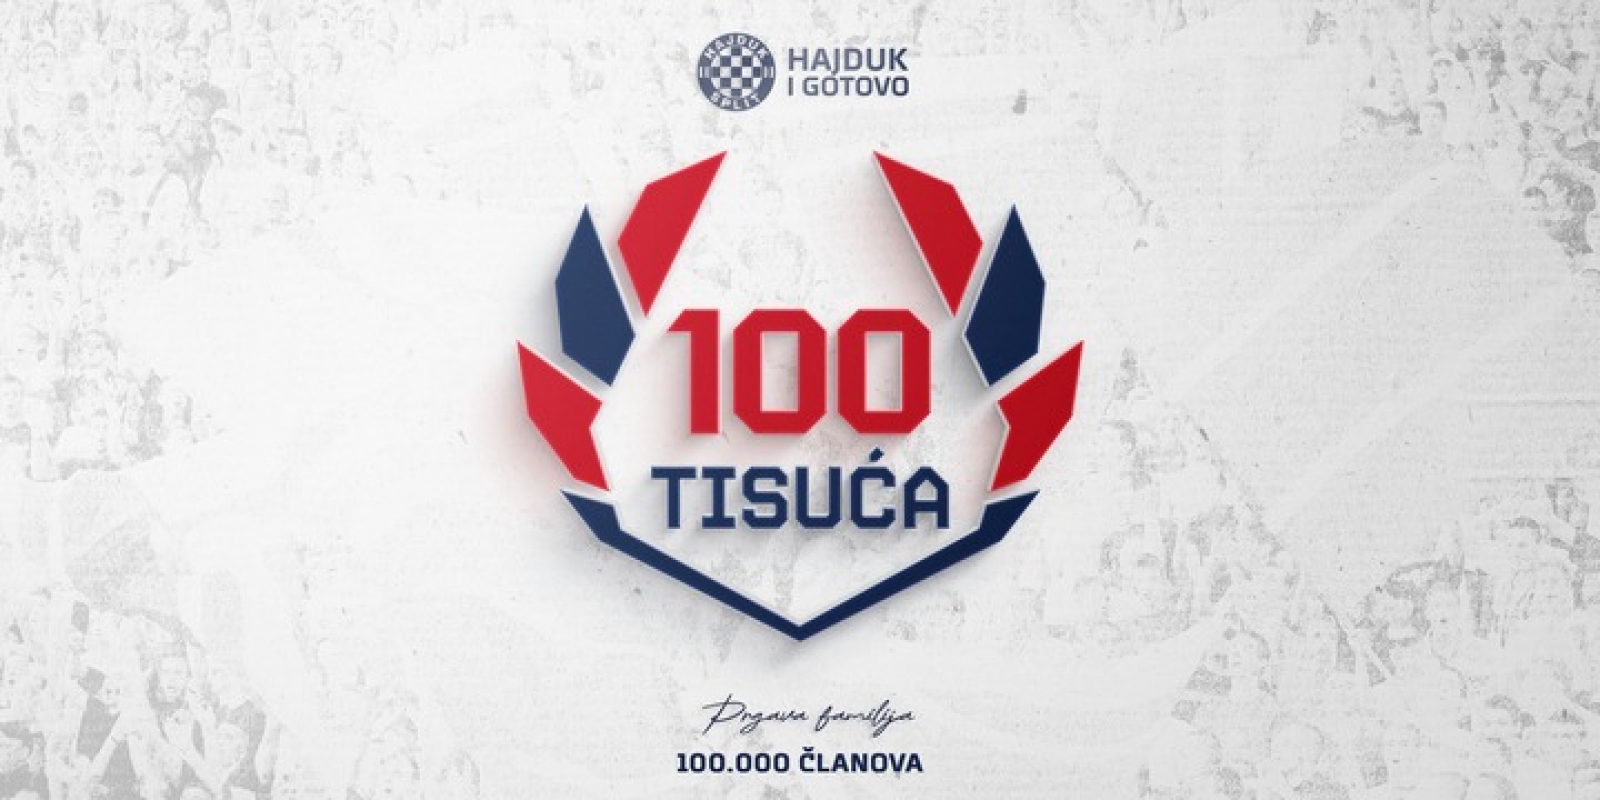 Dan za povijest: Hajduk ima impresivnih 100.000 članova!